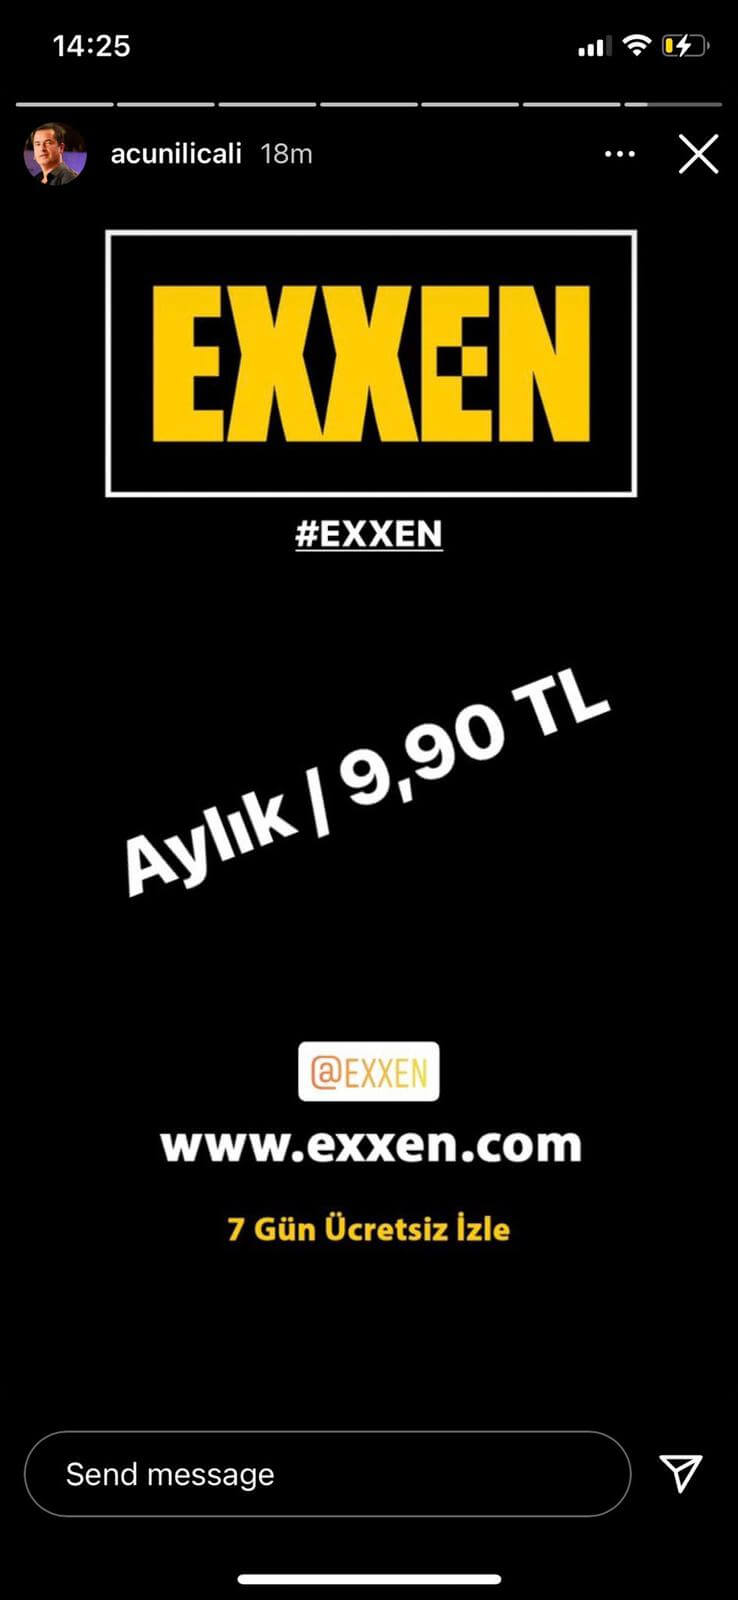 Exxen'in Aylık Abonelik Fiyatı Açıklandı